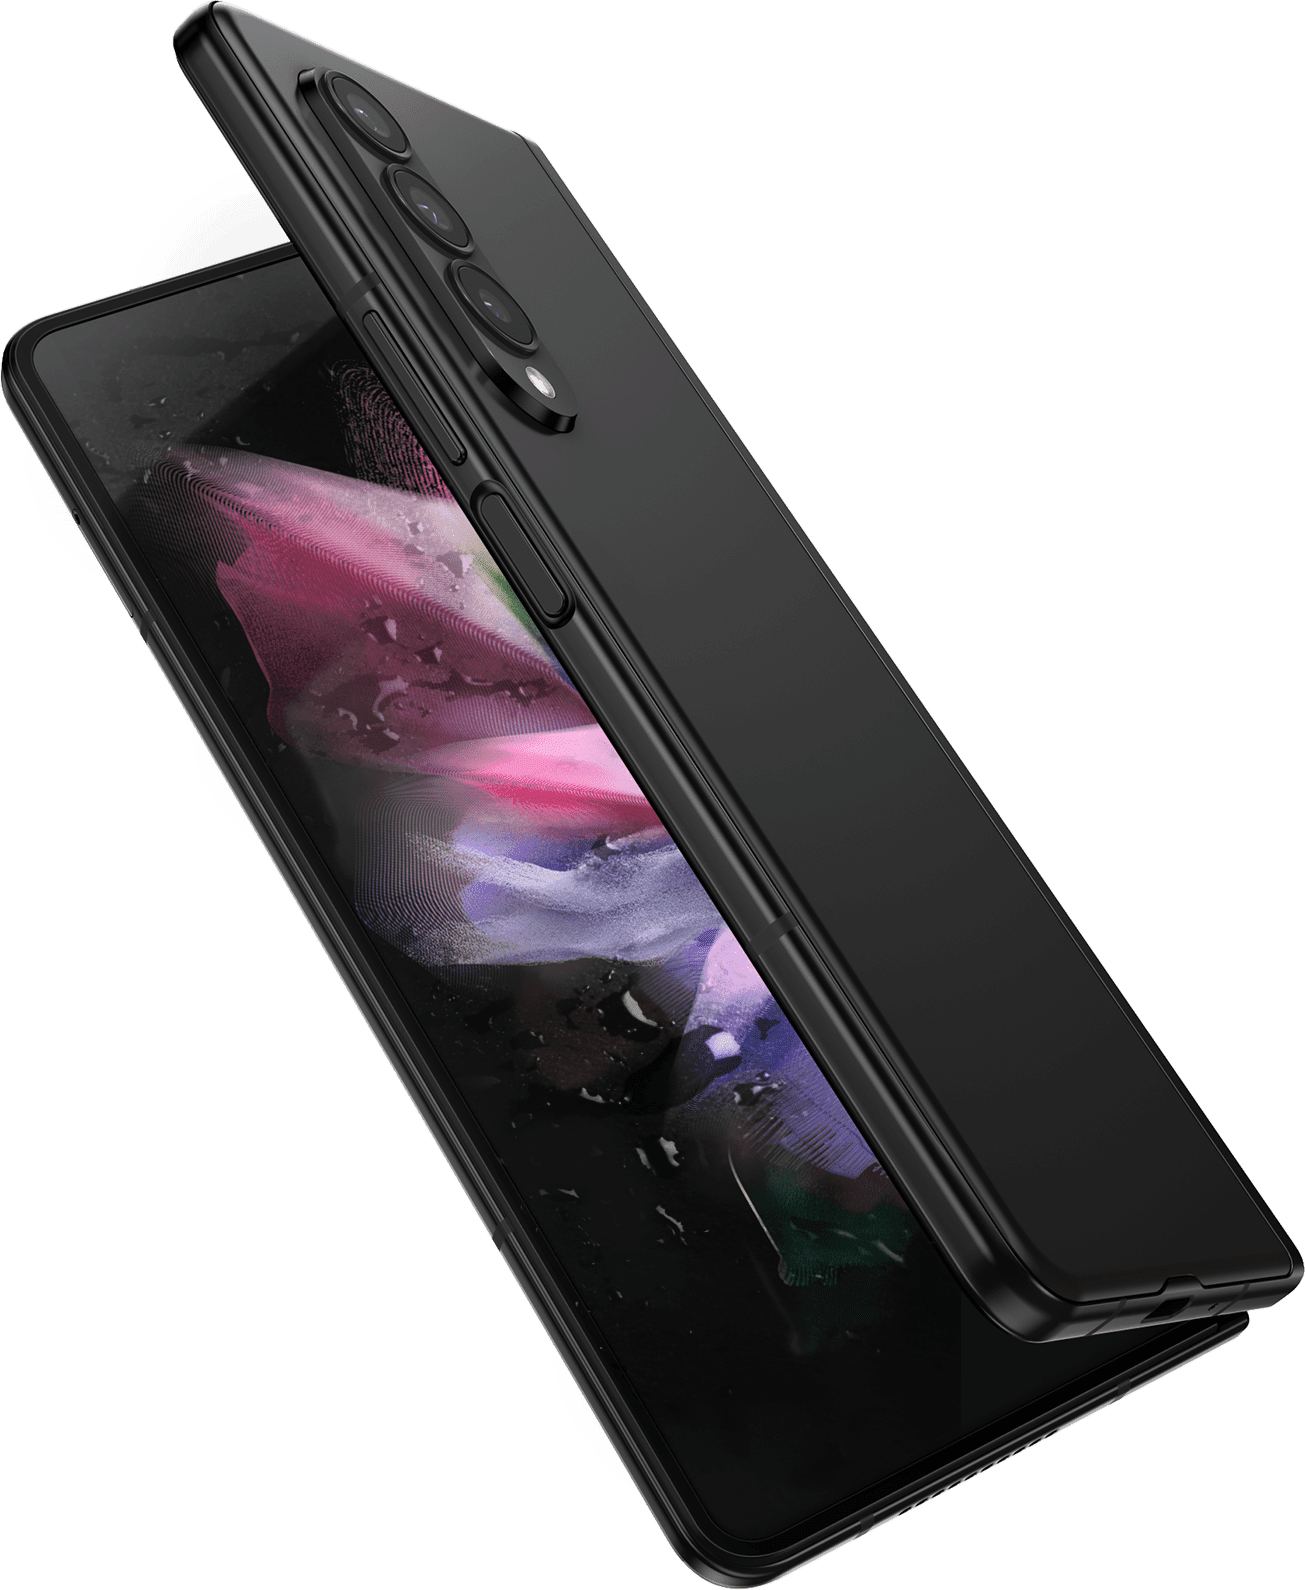 مشهد لهاتف Galaxy Z Fold3 5G وهو مفتوح جزئياً، حيث تراه من الجانب المفتوح، مع ظهور صورة خلفية ملونة على الشاشة الرئيسية. الهاتف محاط برذاذ ماء.